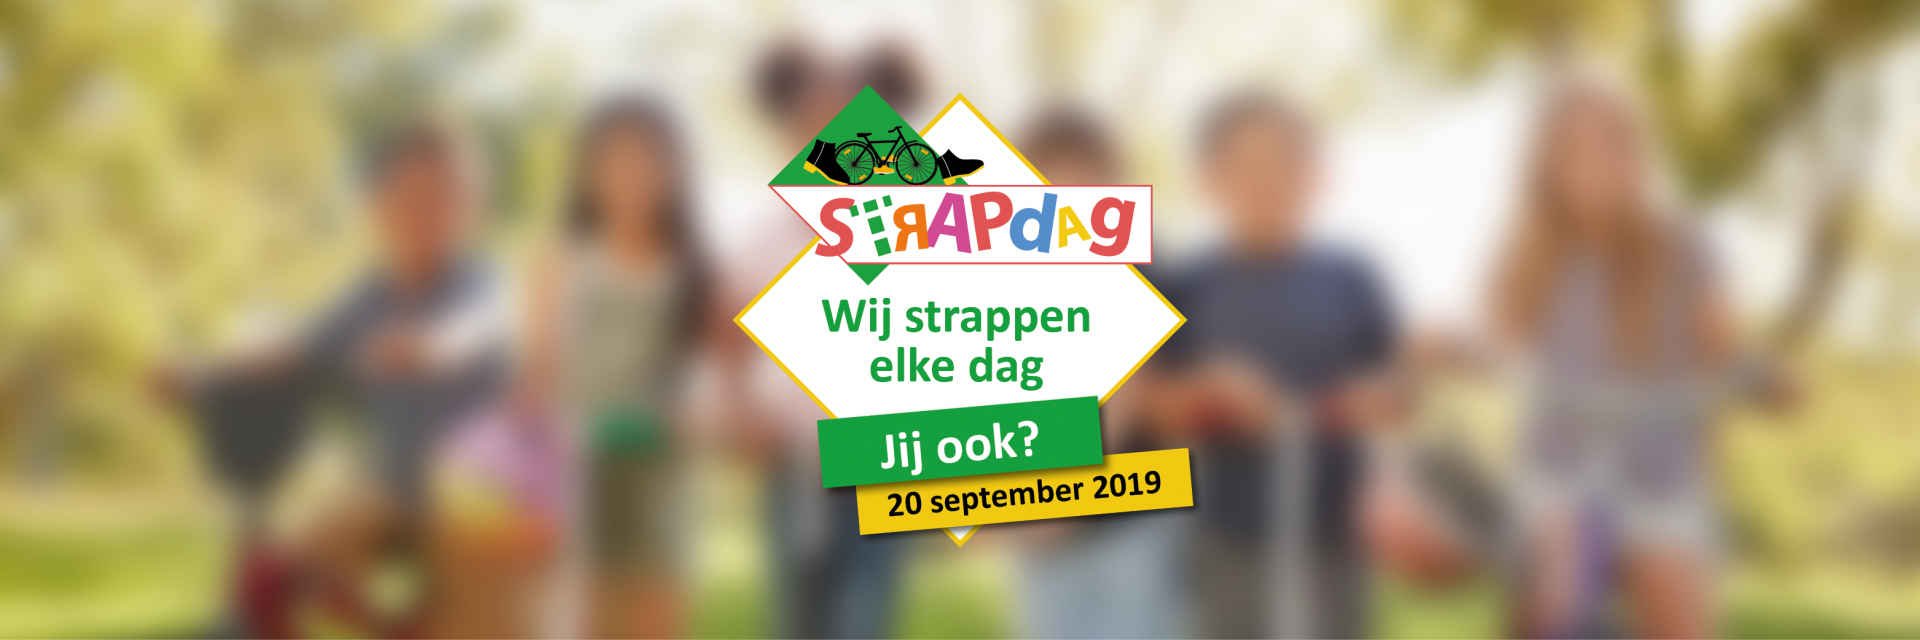 Klaar voor de STRAPDAG op 20 september?